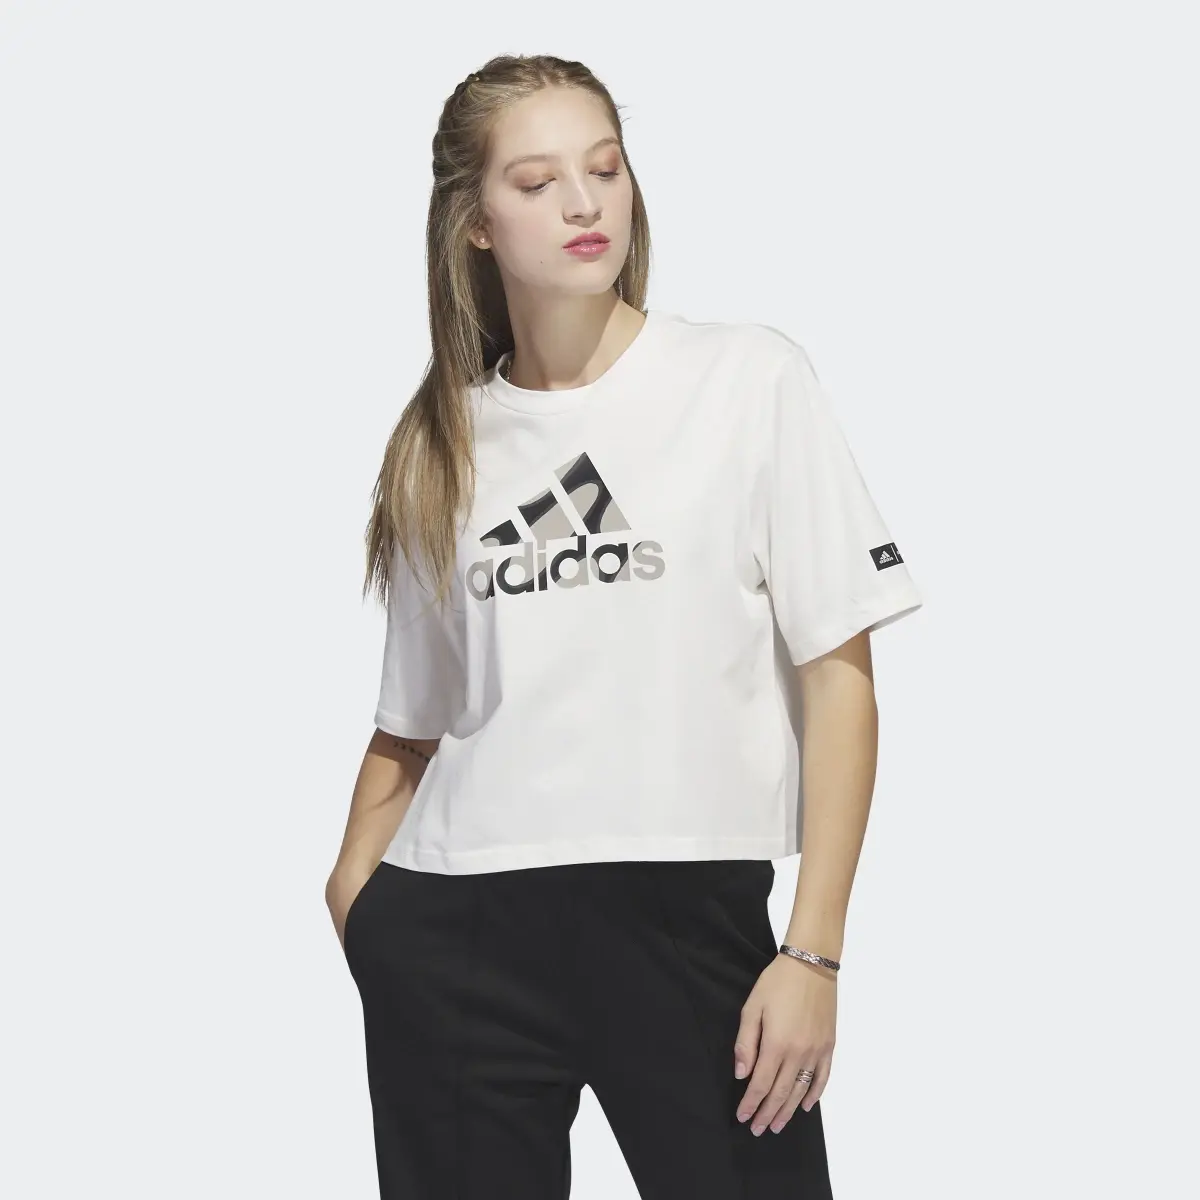 Adidas Marimekko Crop T-Shirt. 2